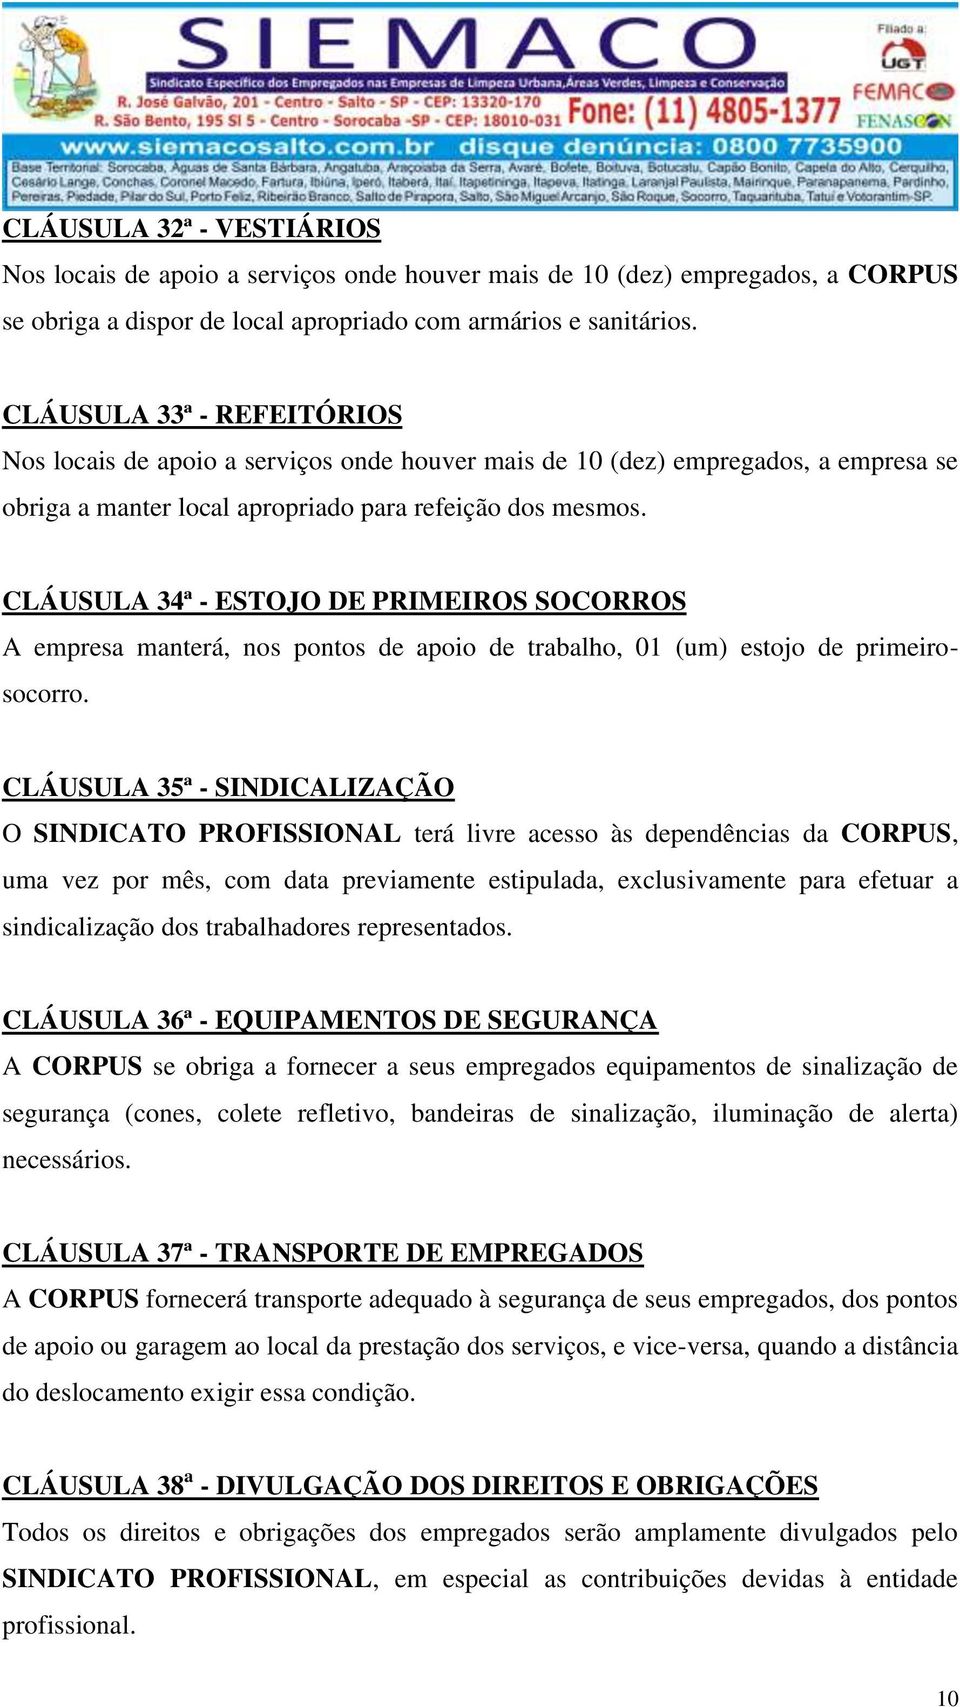 CLÁUSULA 34ª - ESTOJO DE PRIMEIROS SOCORROS A empresa manterá, nos pontos de apoio de trabalho, 01 (um) estojo de primeirosocorro.